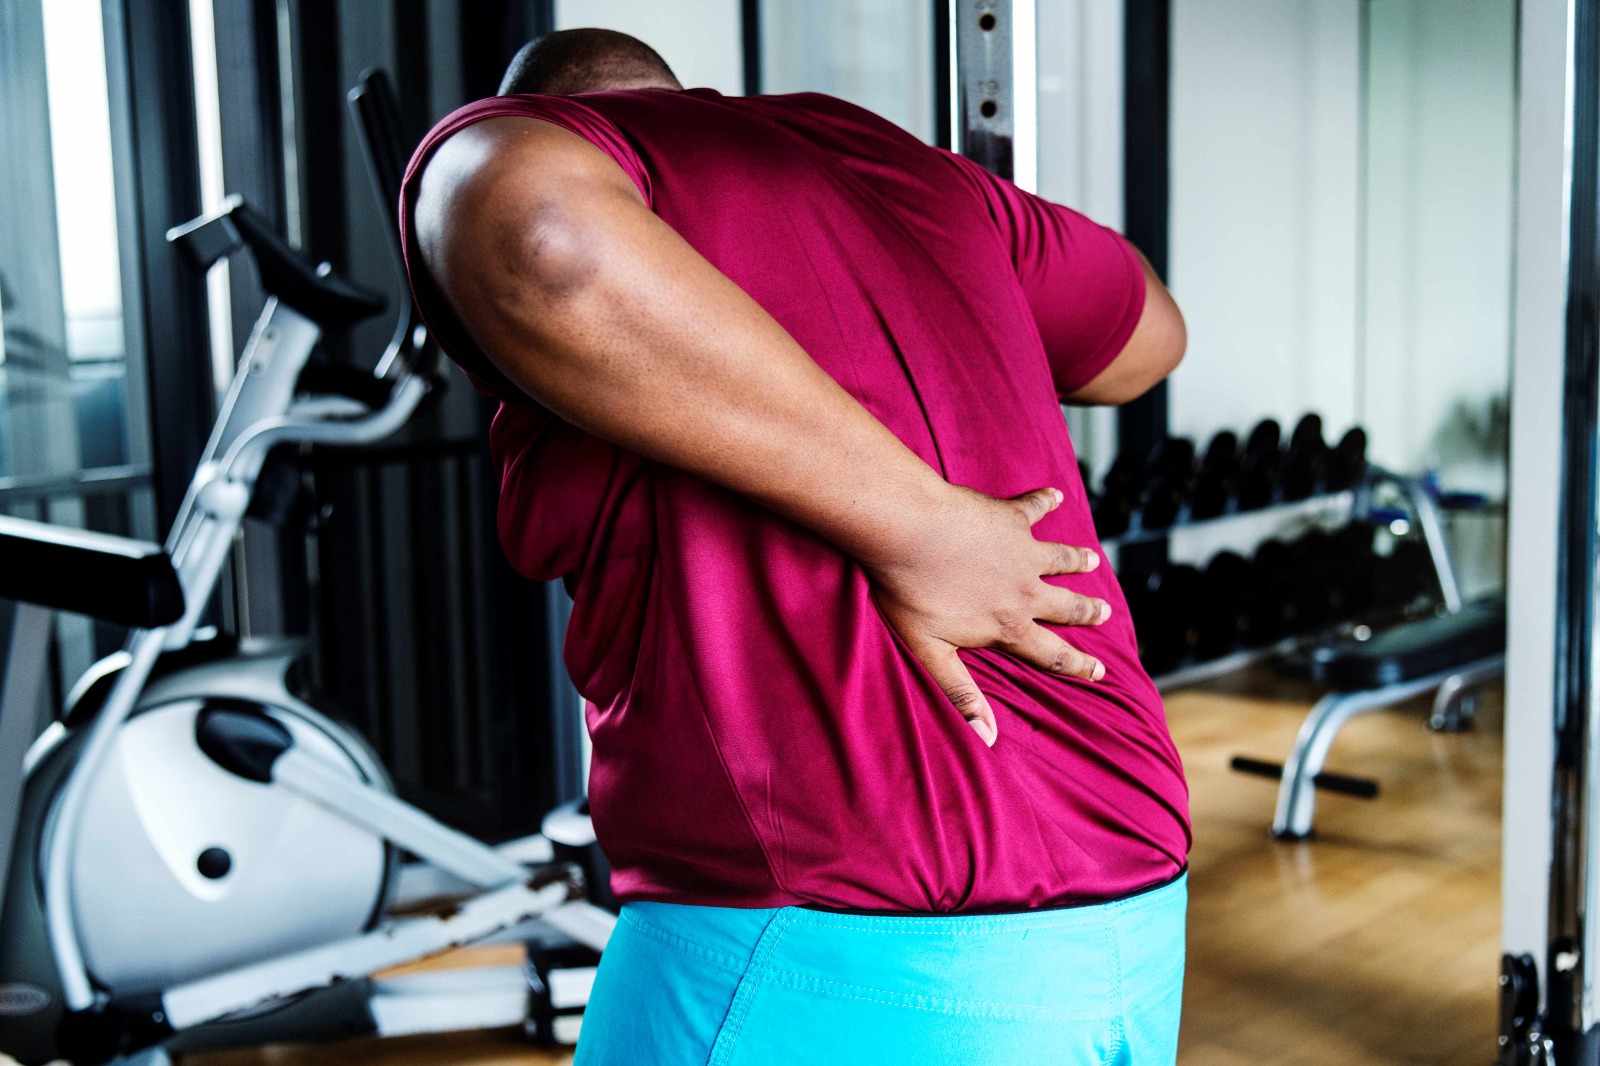 Dor nas costas após exercício físico? Saiba o que fazer